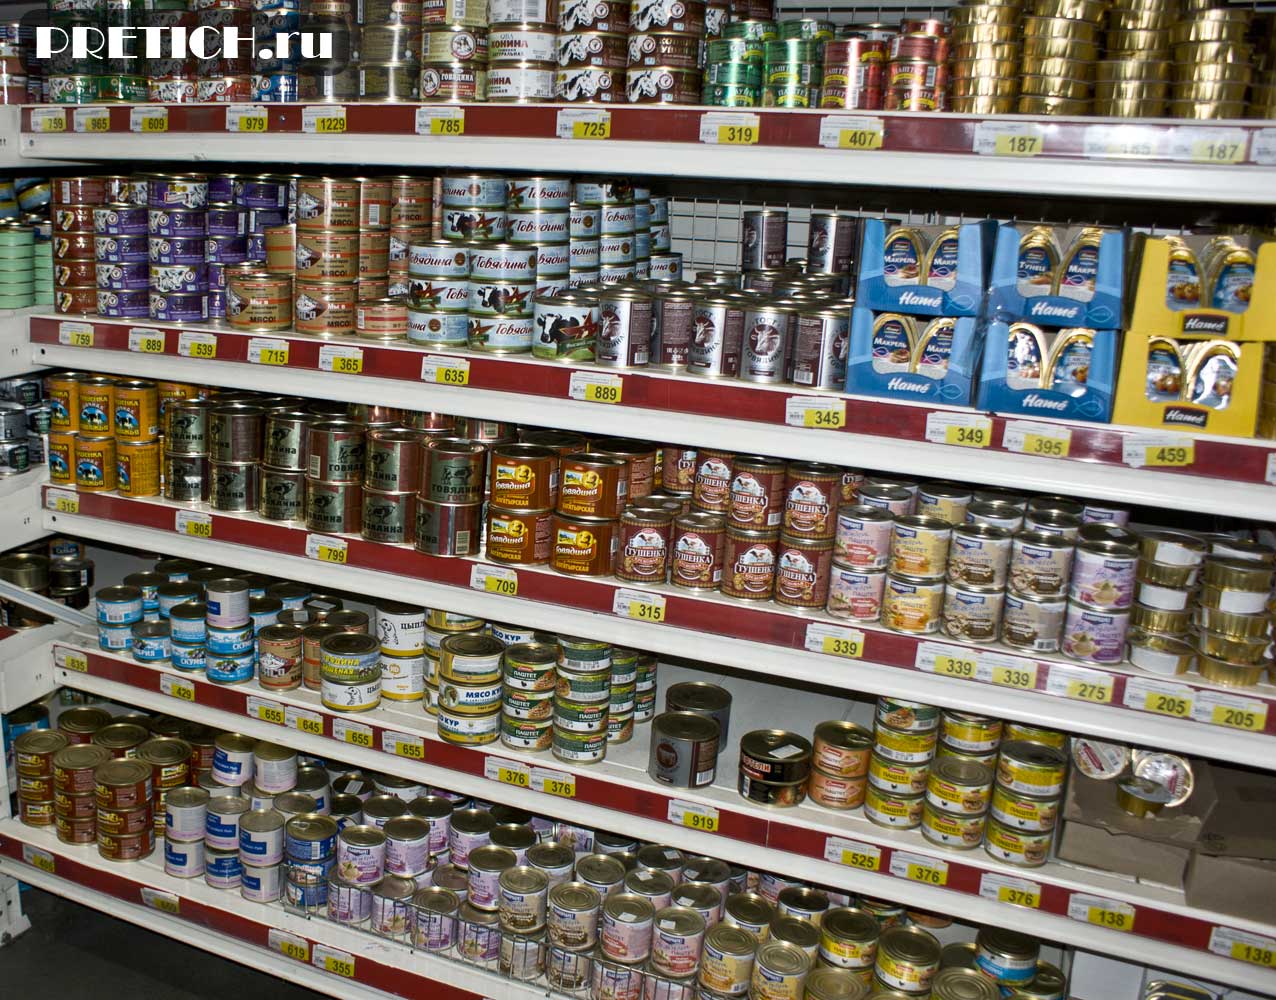 Magnum Сash&Carry консервы в супермаркете, отзыв